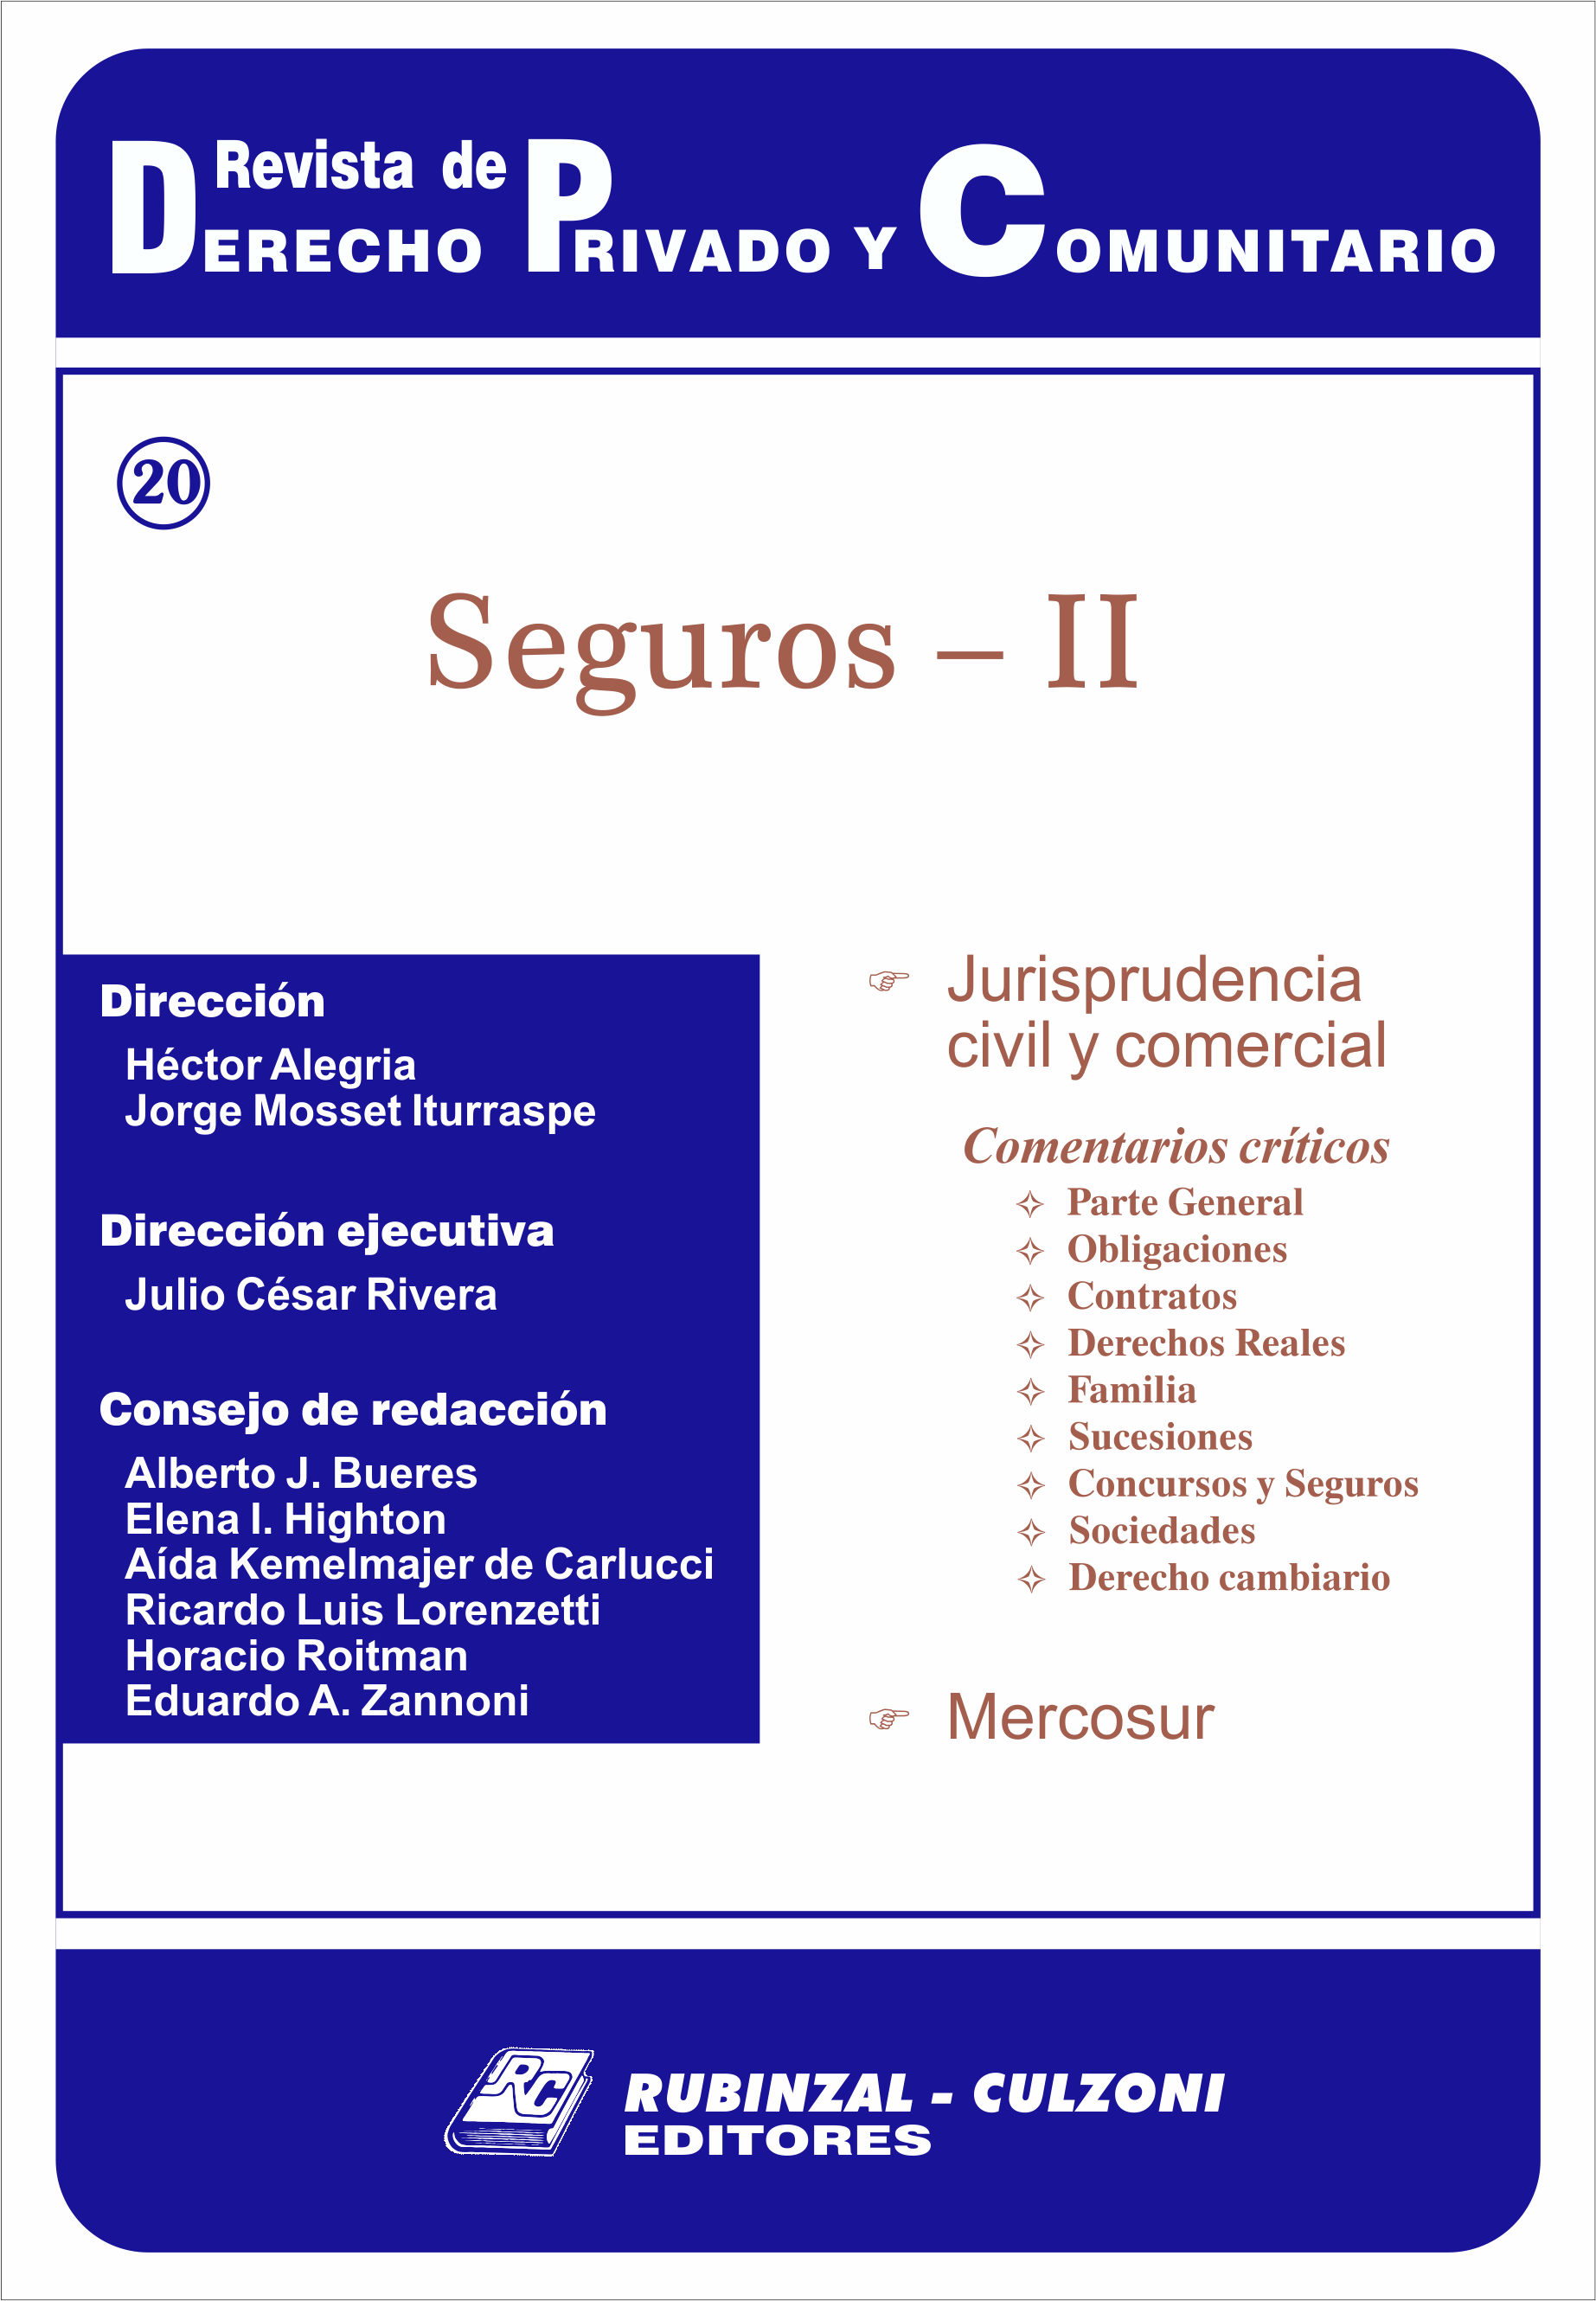 Revista de Derecho Privado y Comunitario - Seguros - II